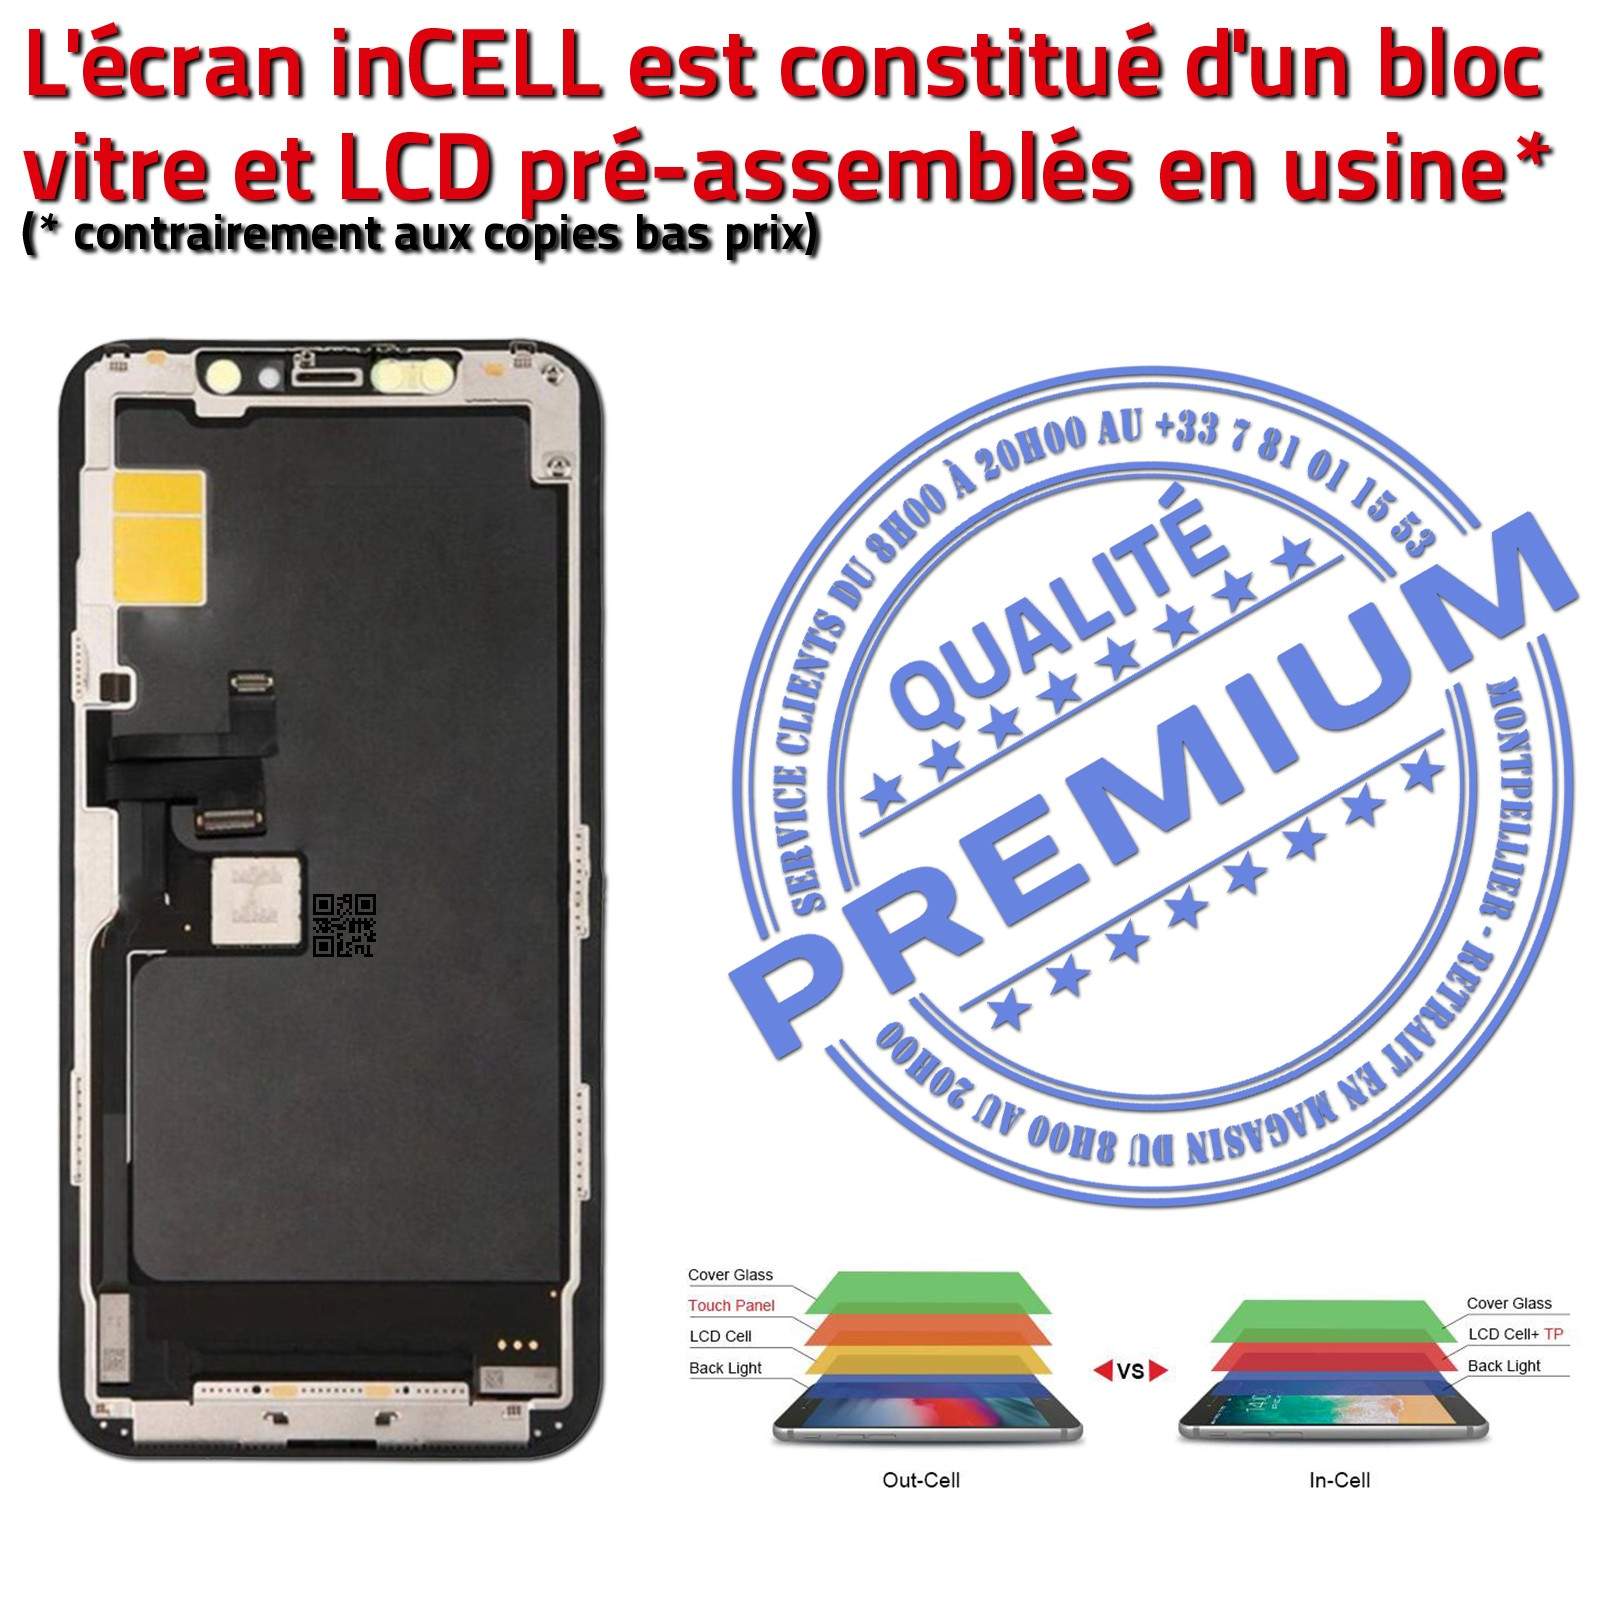 LCD iPhone A2218 Écran inCELL Apple PREMIUM Super Retina 6,5 pouces Vitre SmartPhone Affichage True Tone Cristaux Liquides